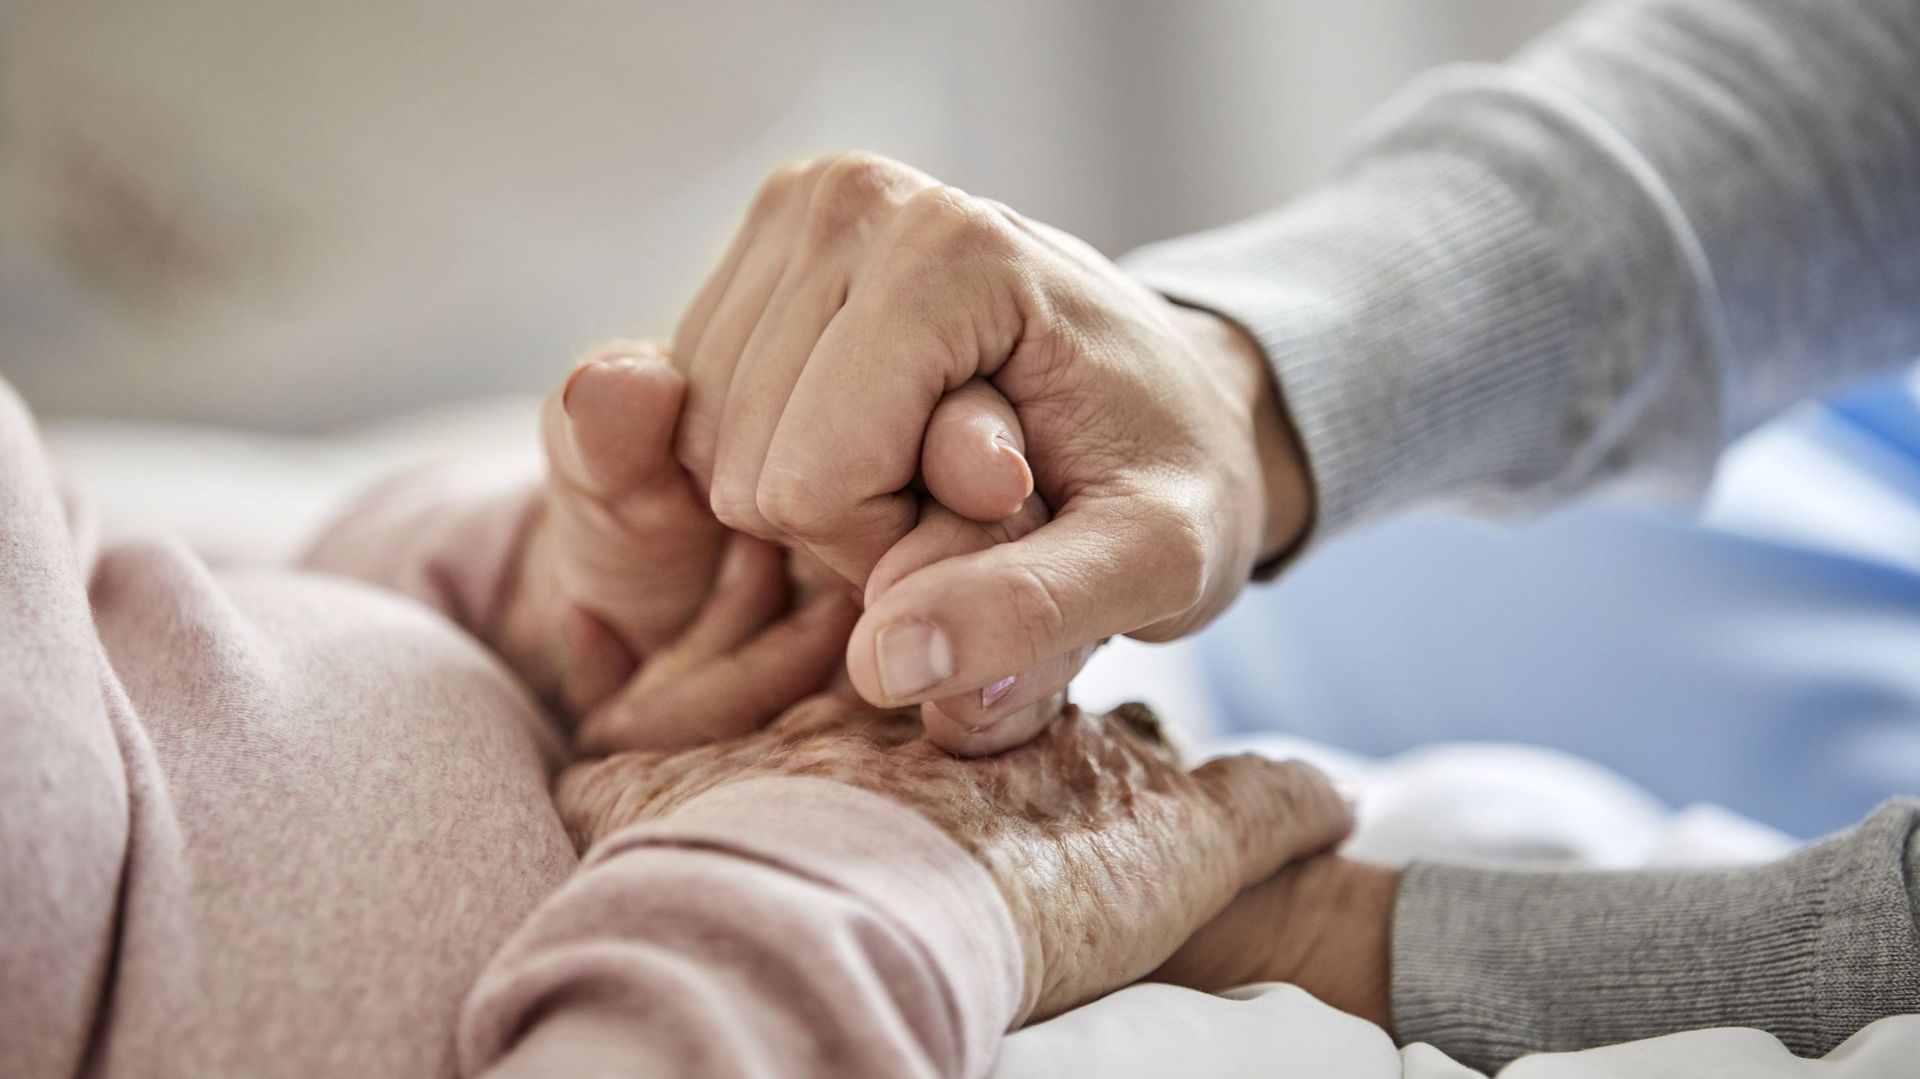 Maltraitance des personnes âgées : quand les soins déraillent